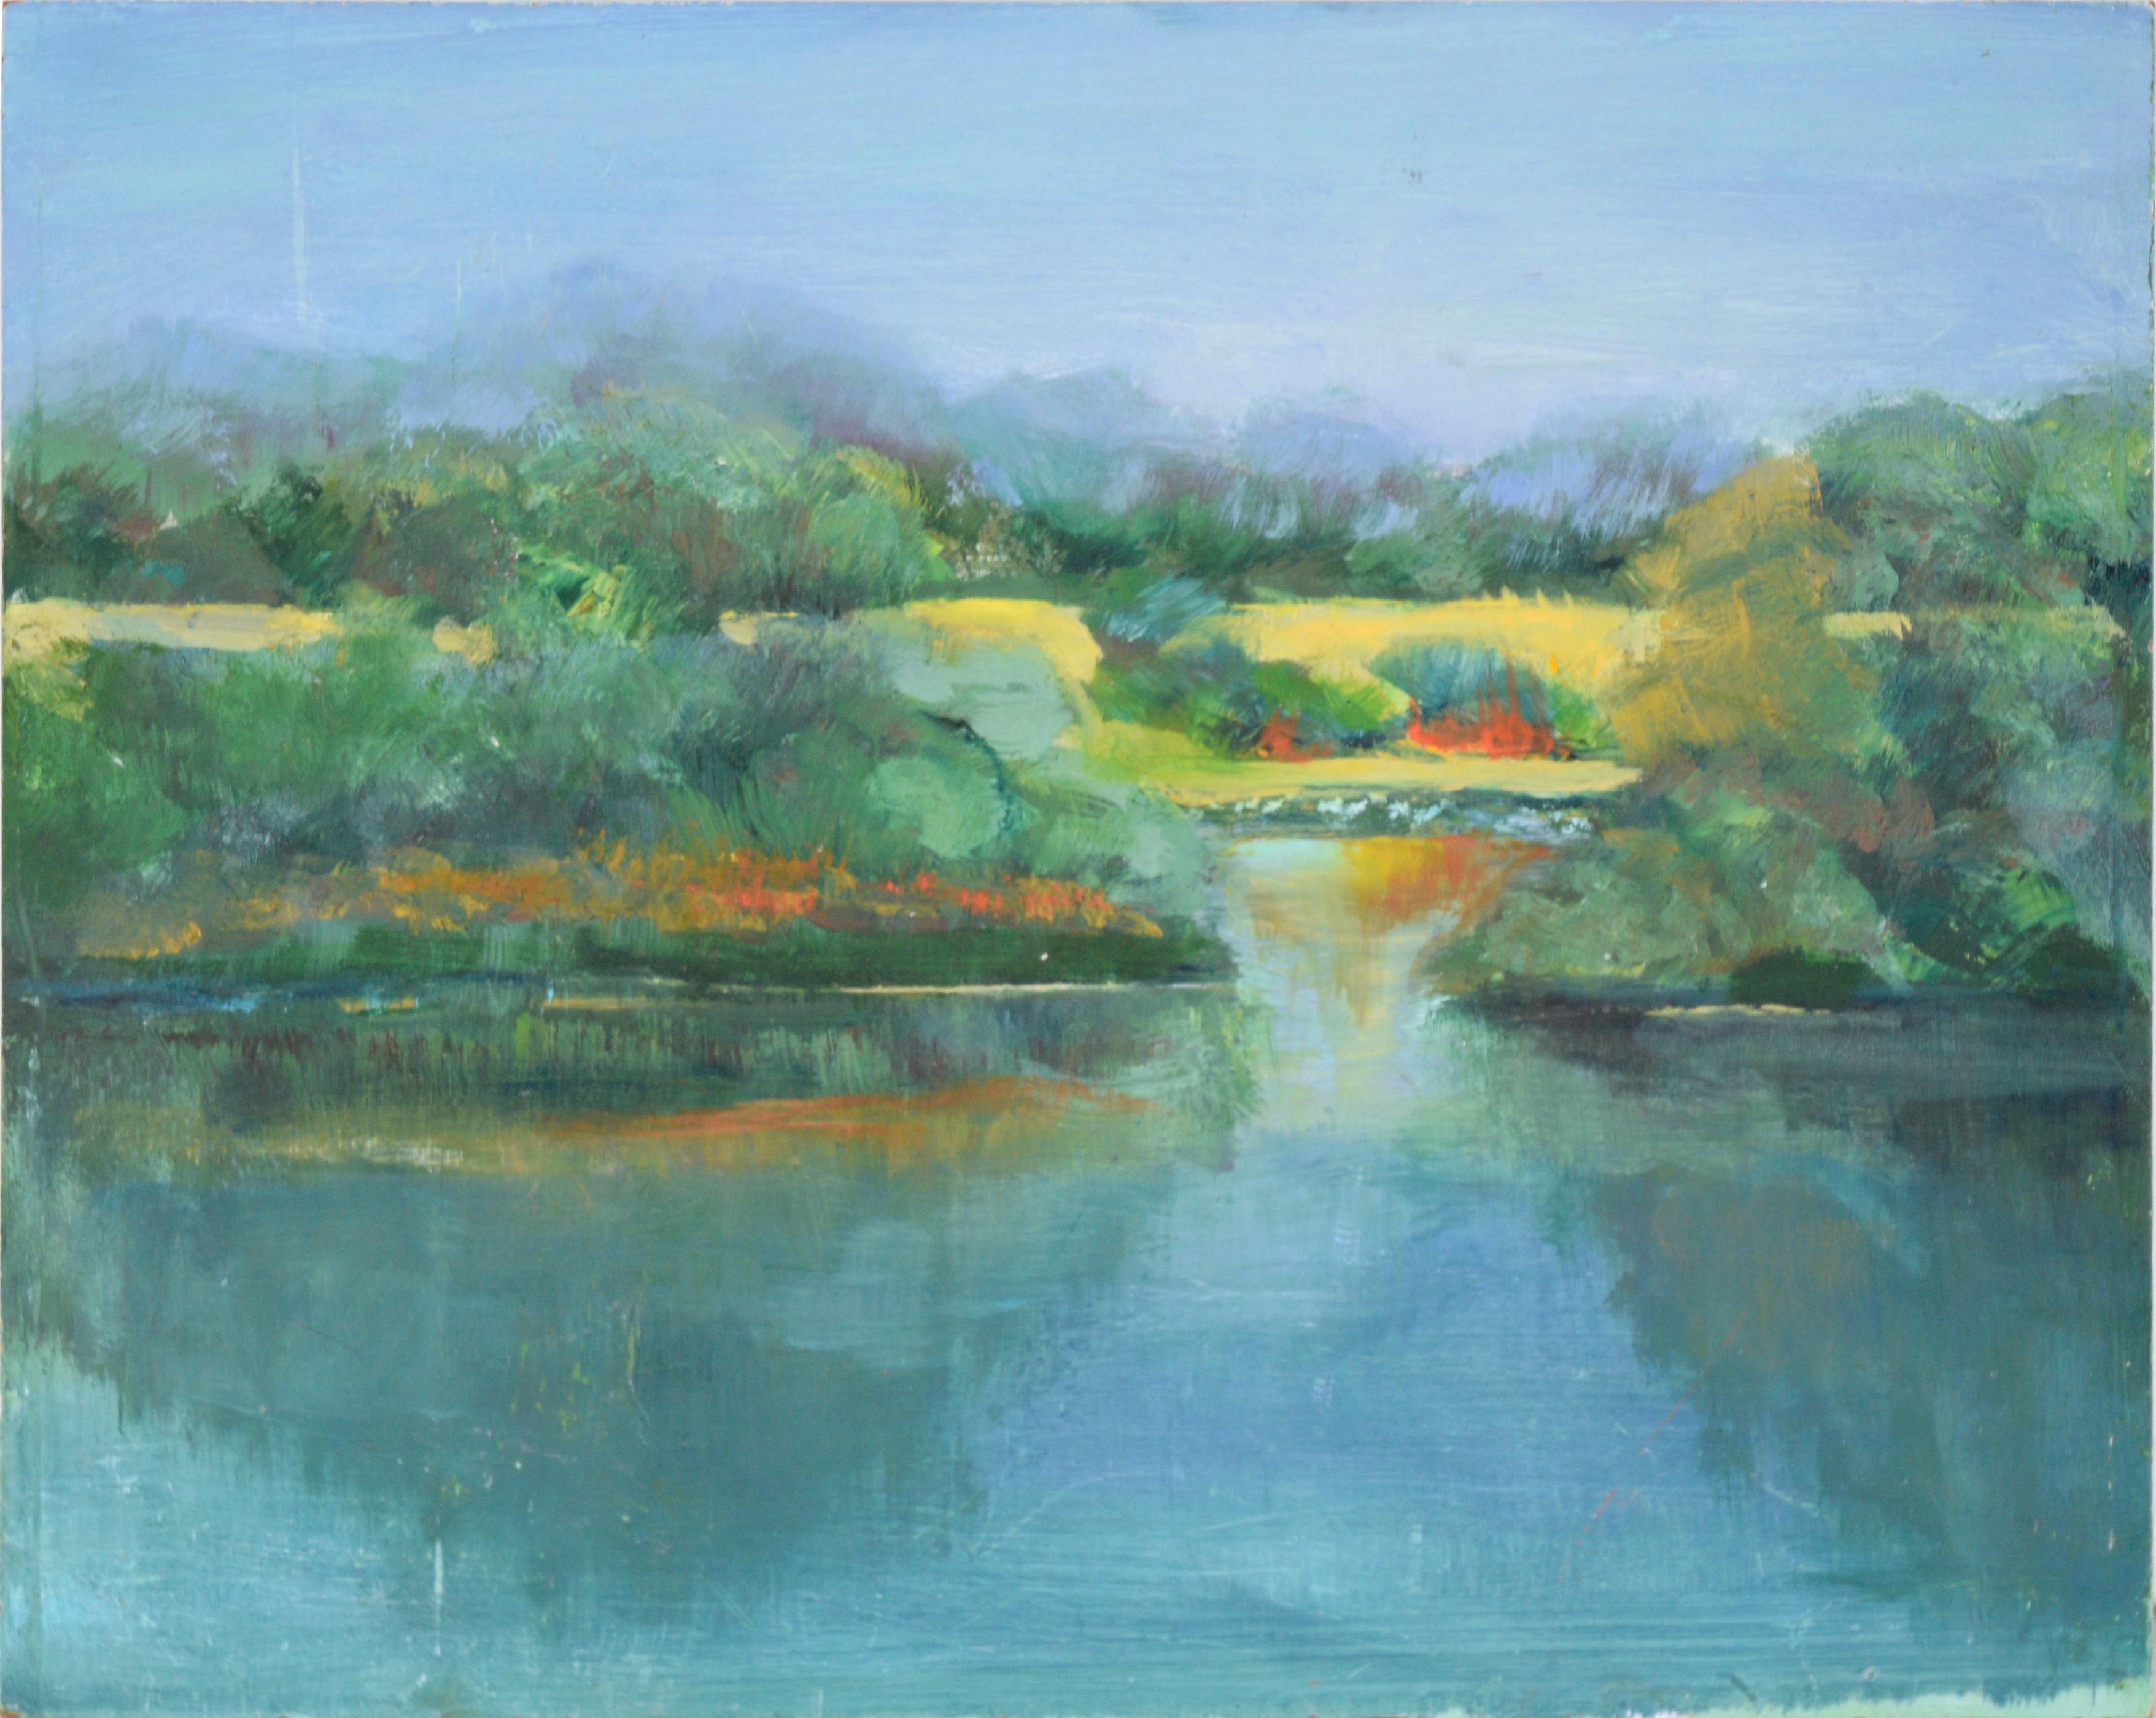 Landscape Painting Nick White - "Coyote Park" - Paysage en plein air à l'huile sur panneau